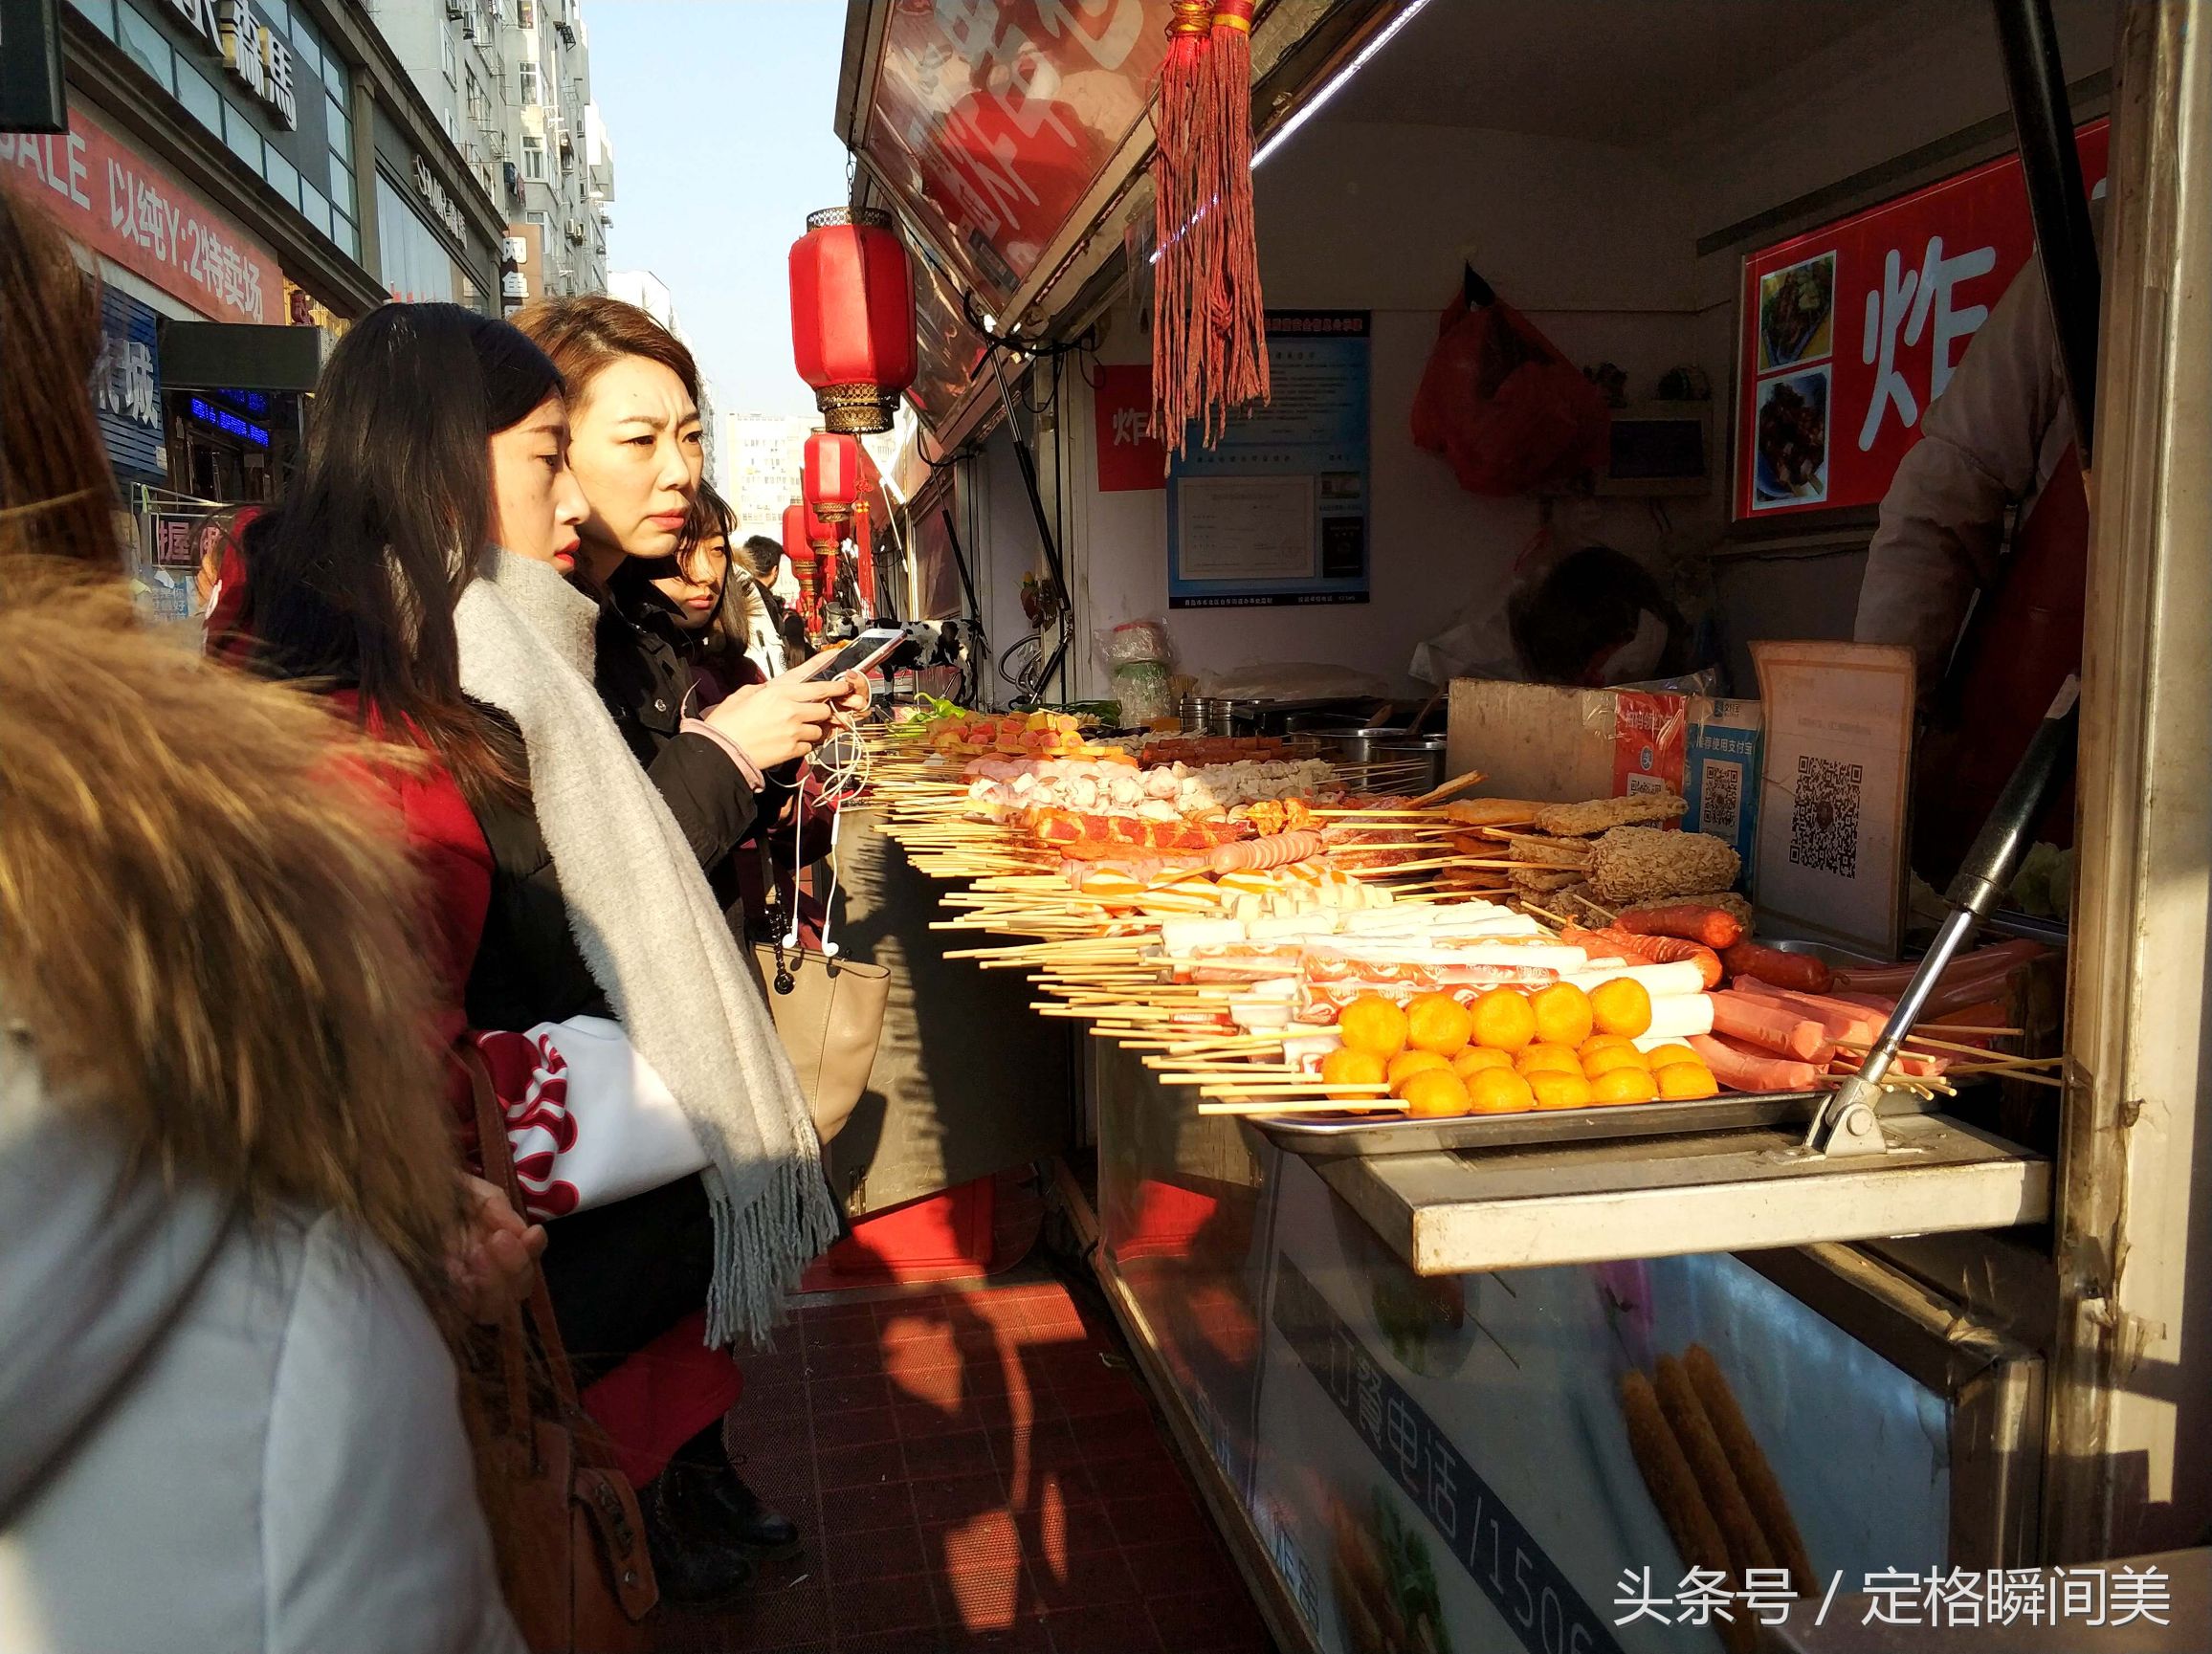 图为:台东步行街上,一烤肠小吃摊位上,挤满了前来购买美食的顾客.